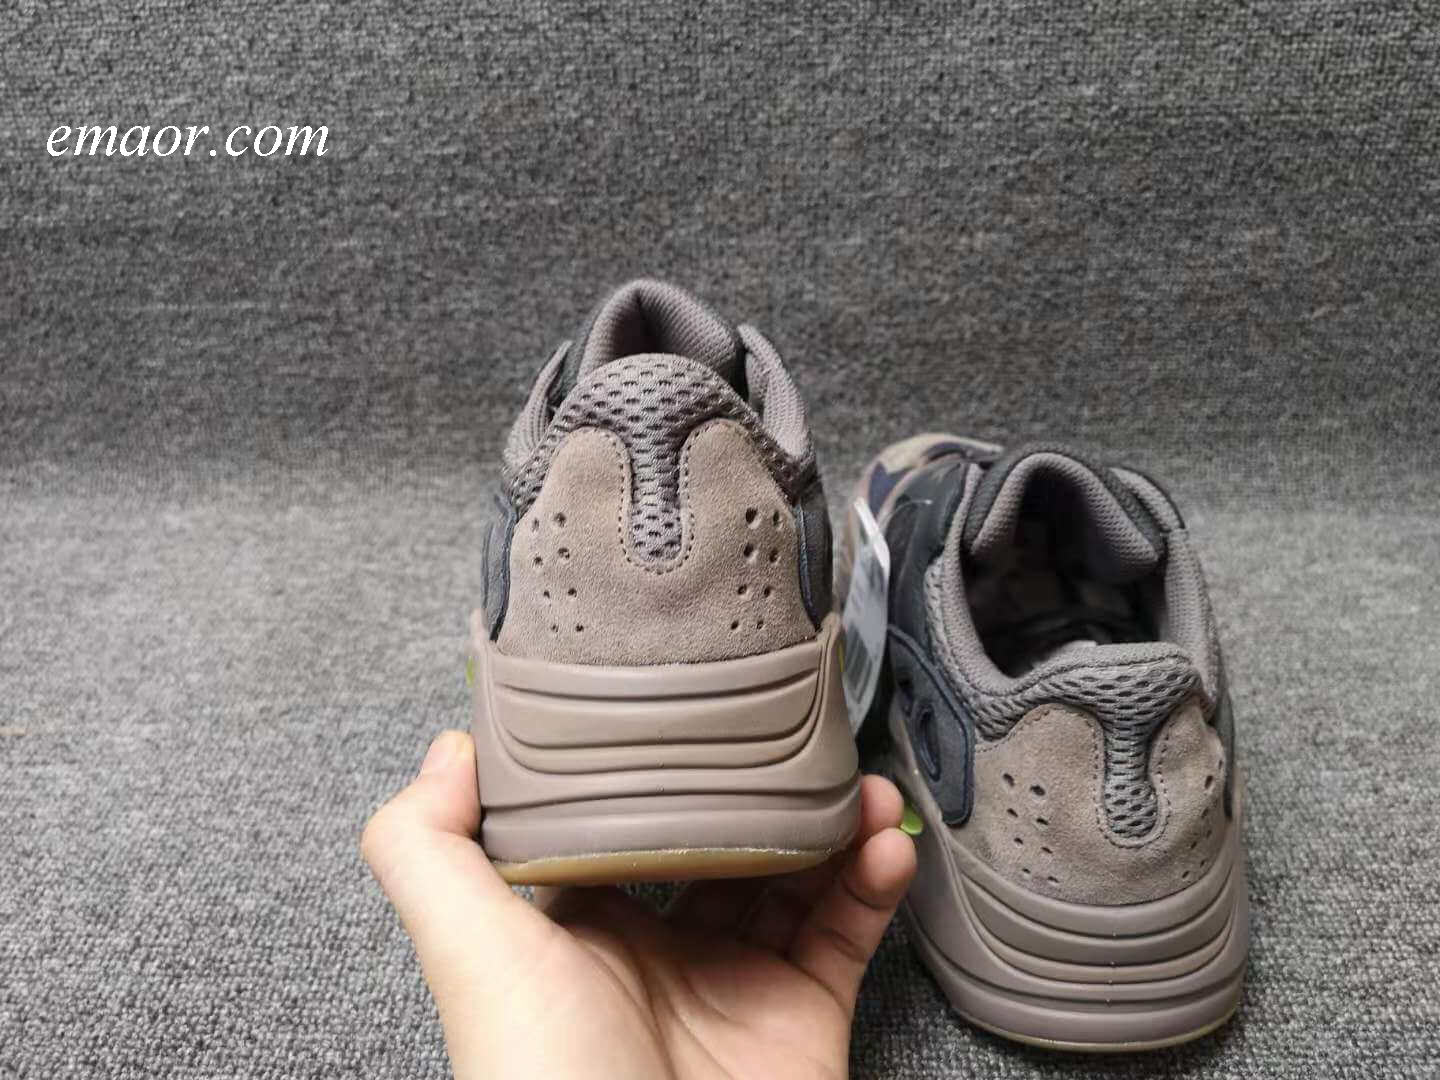 Yeezy Boost 700 Inertia Men's Hiking Shoes Lovers Sneakers Man Sport ...